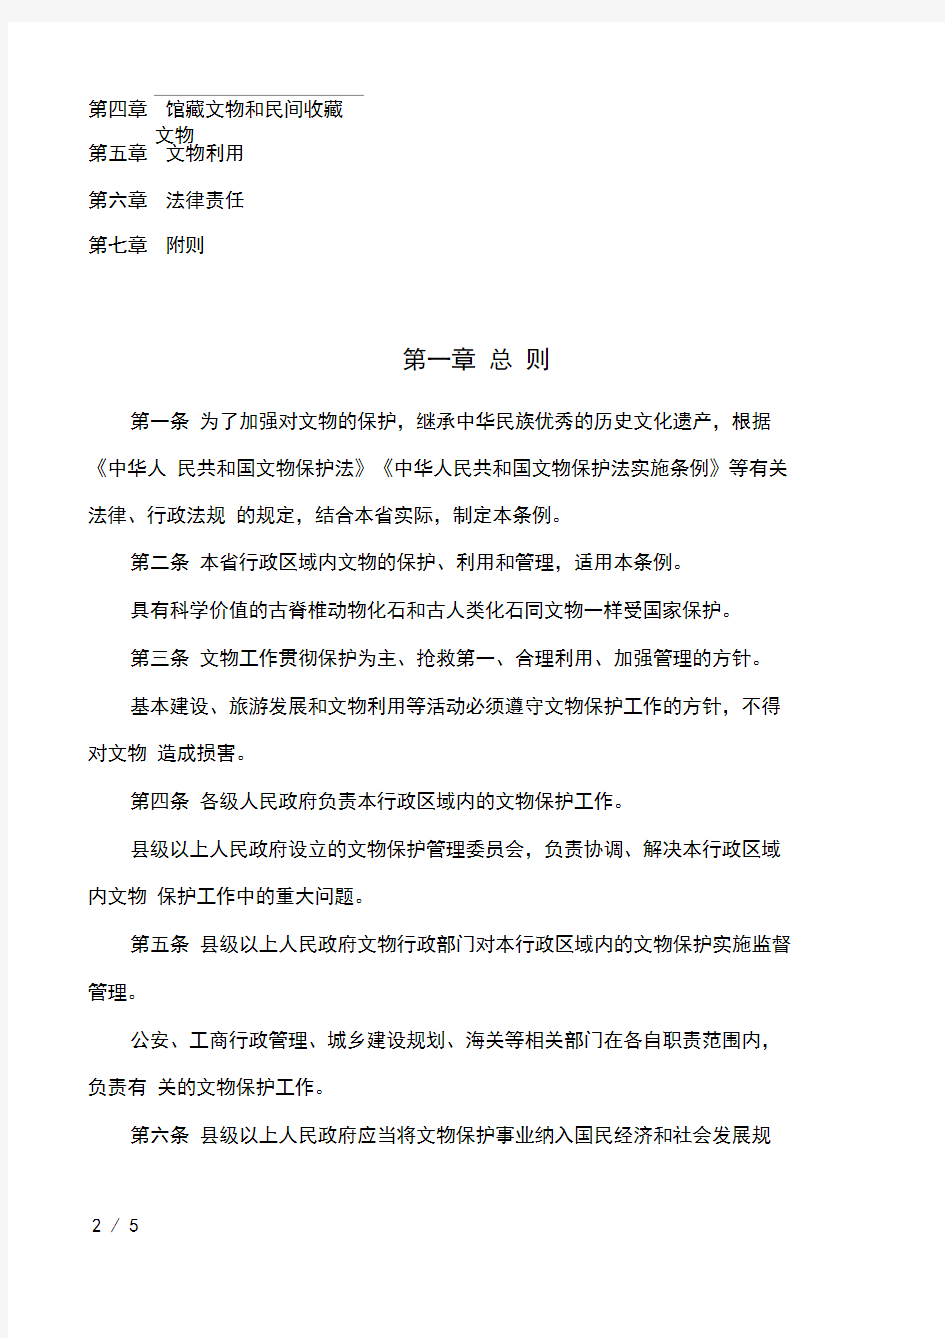 江西省文物保护条例(2016修正)